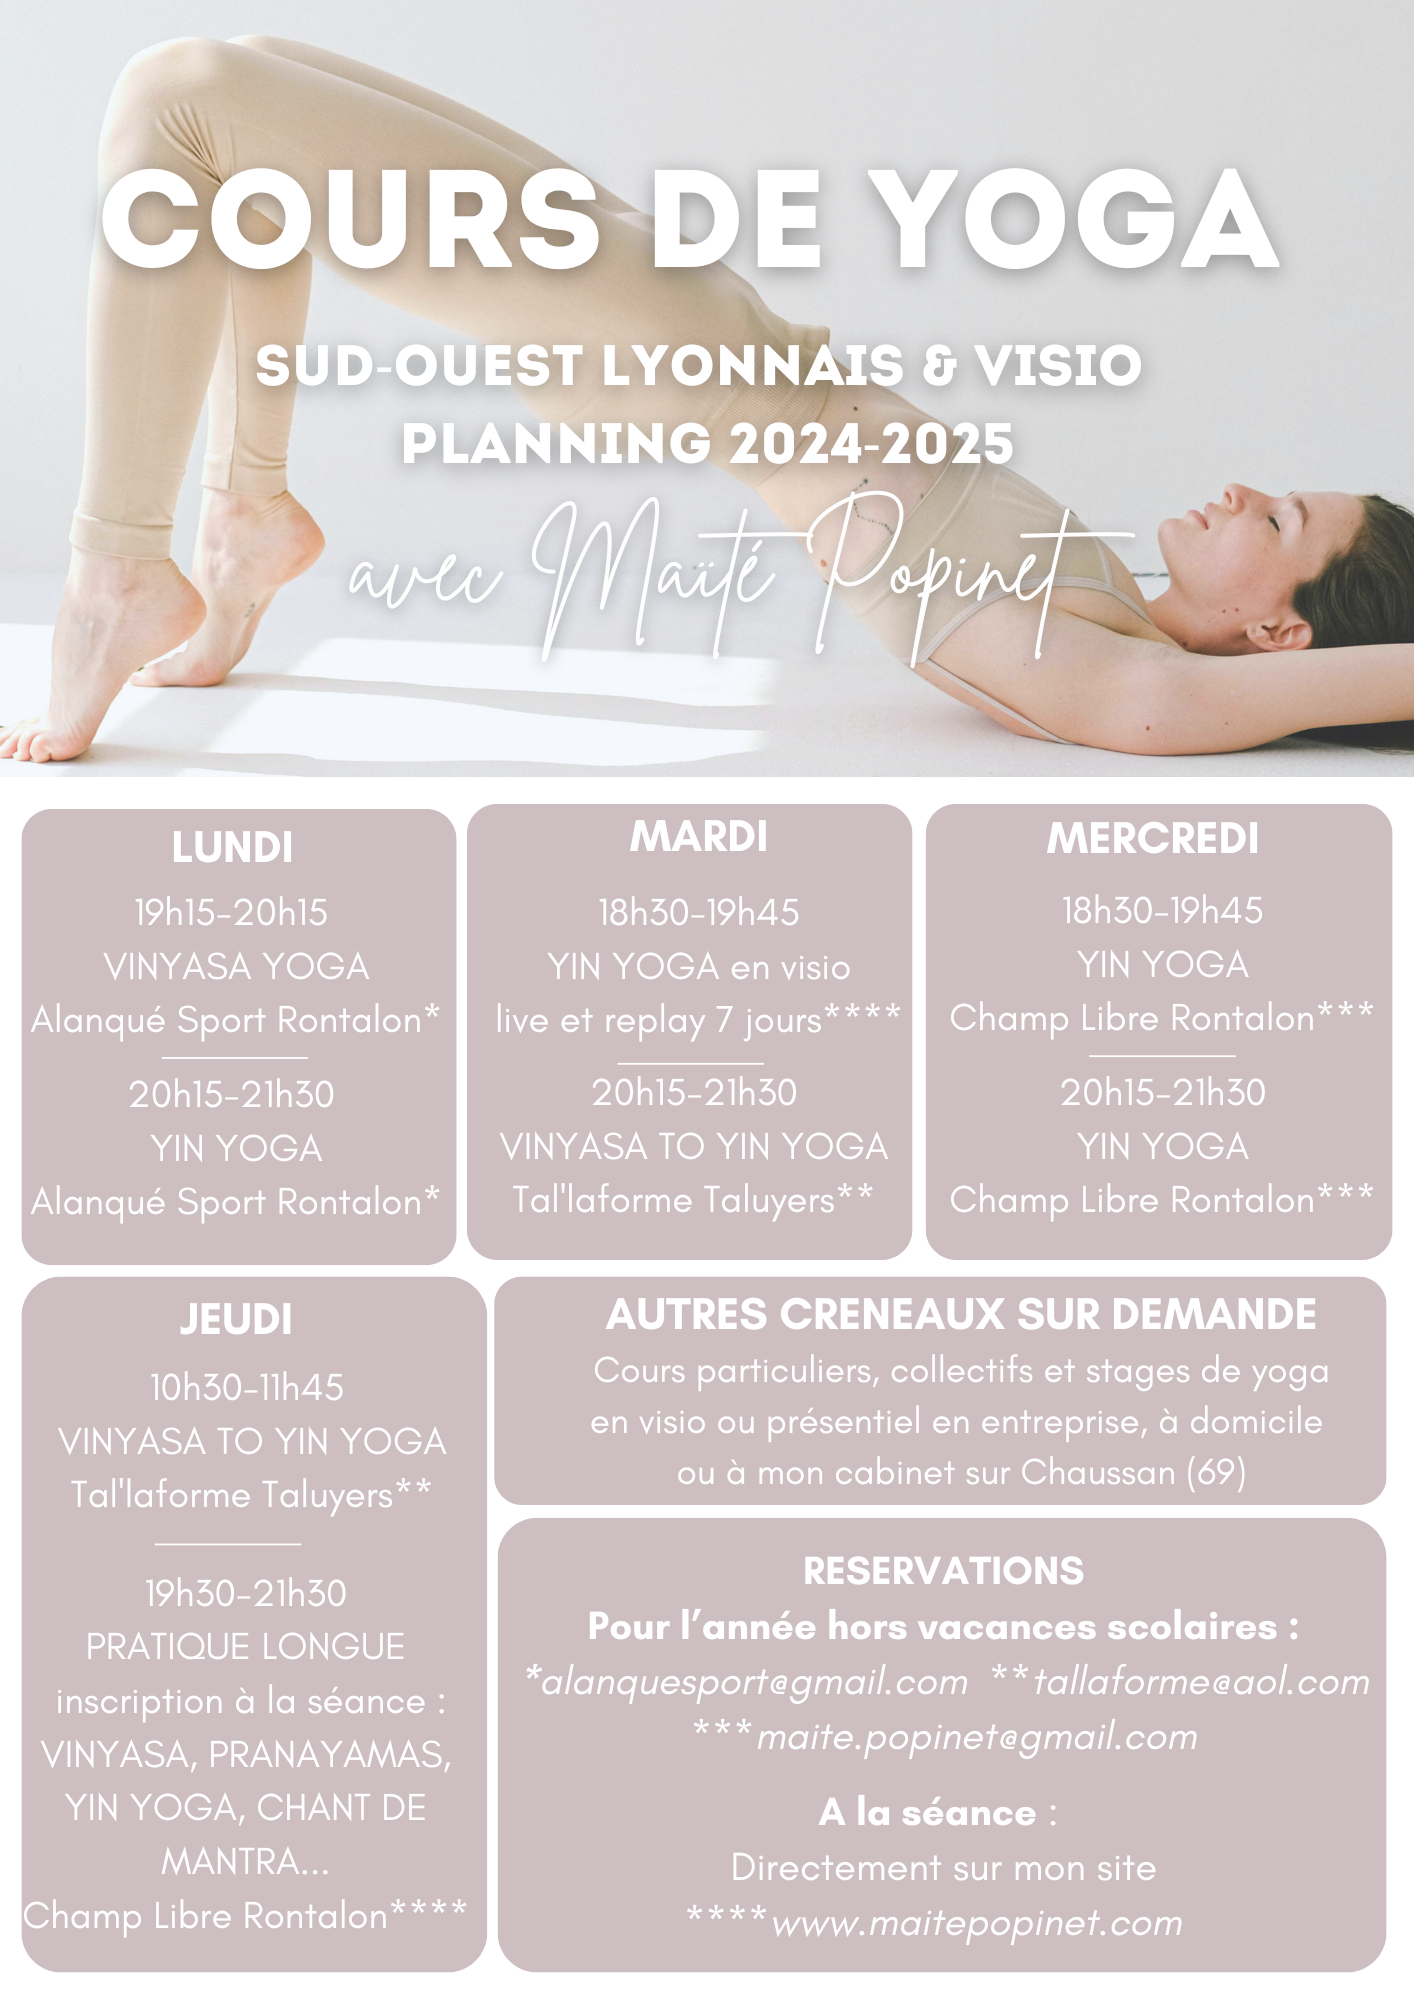 Planning cours de yoga collectifs hebdomadaires 2024-2025 dans le Sud Ouest Lyonnais / Monts du Lyonnais et en Visio avec Maïté Popinet : Yin yoga & Vinyasa yoga